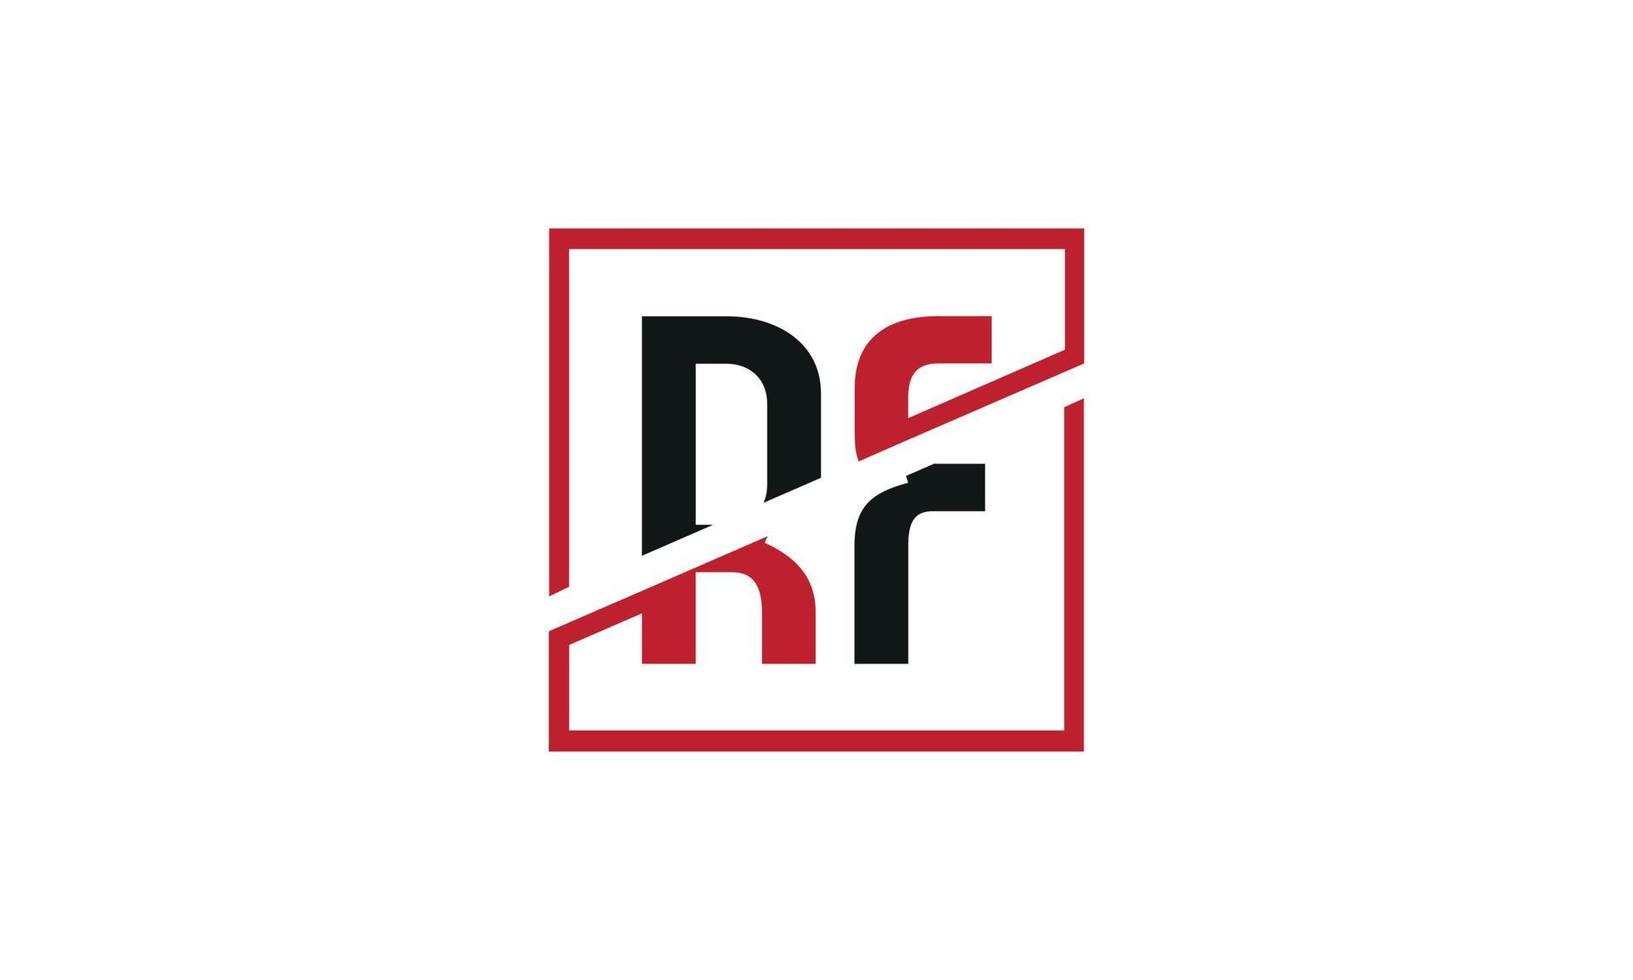 Buchstabe rf Logo pro Vektordatei pro Vektor